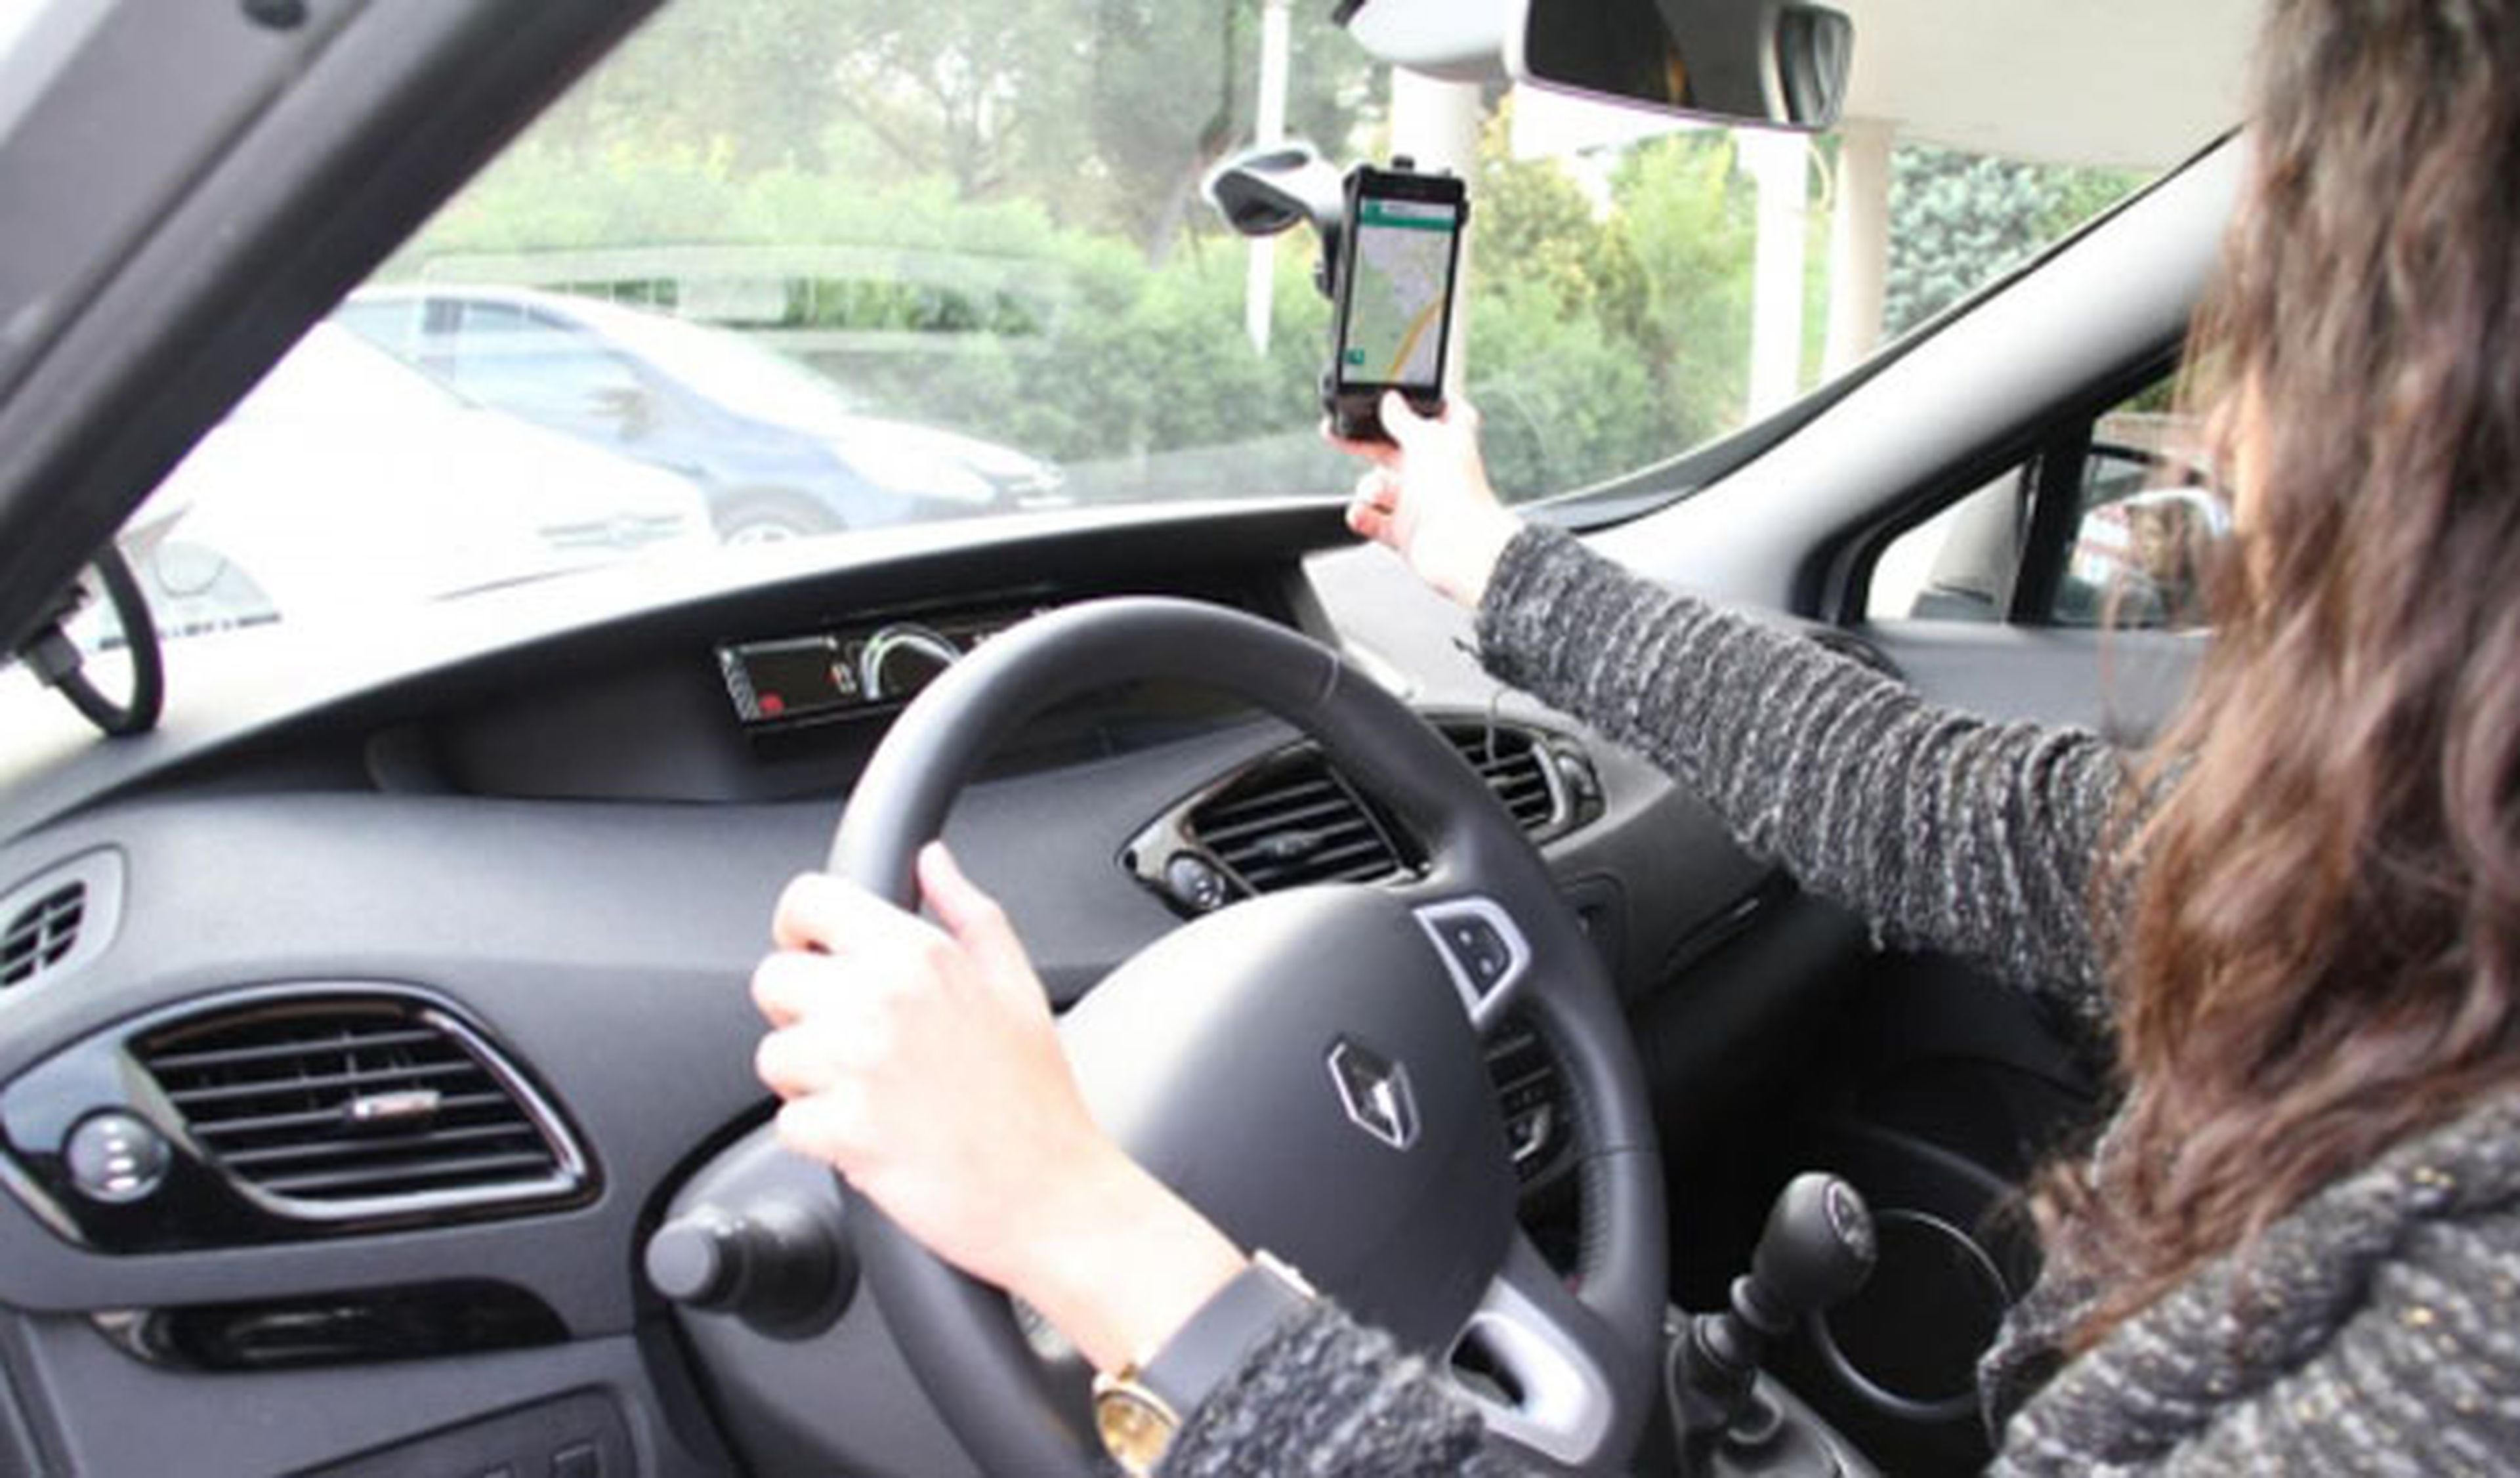 El iPhone 6 podría localizar coches aparcados